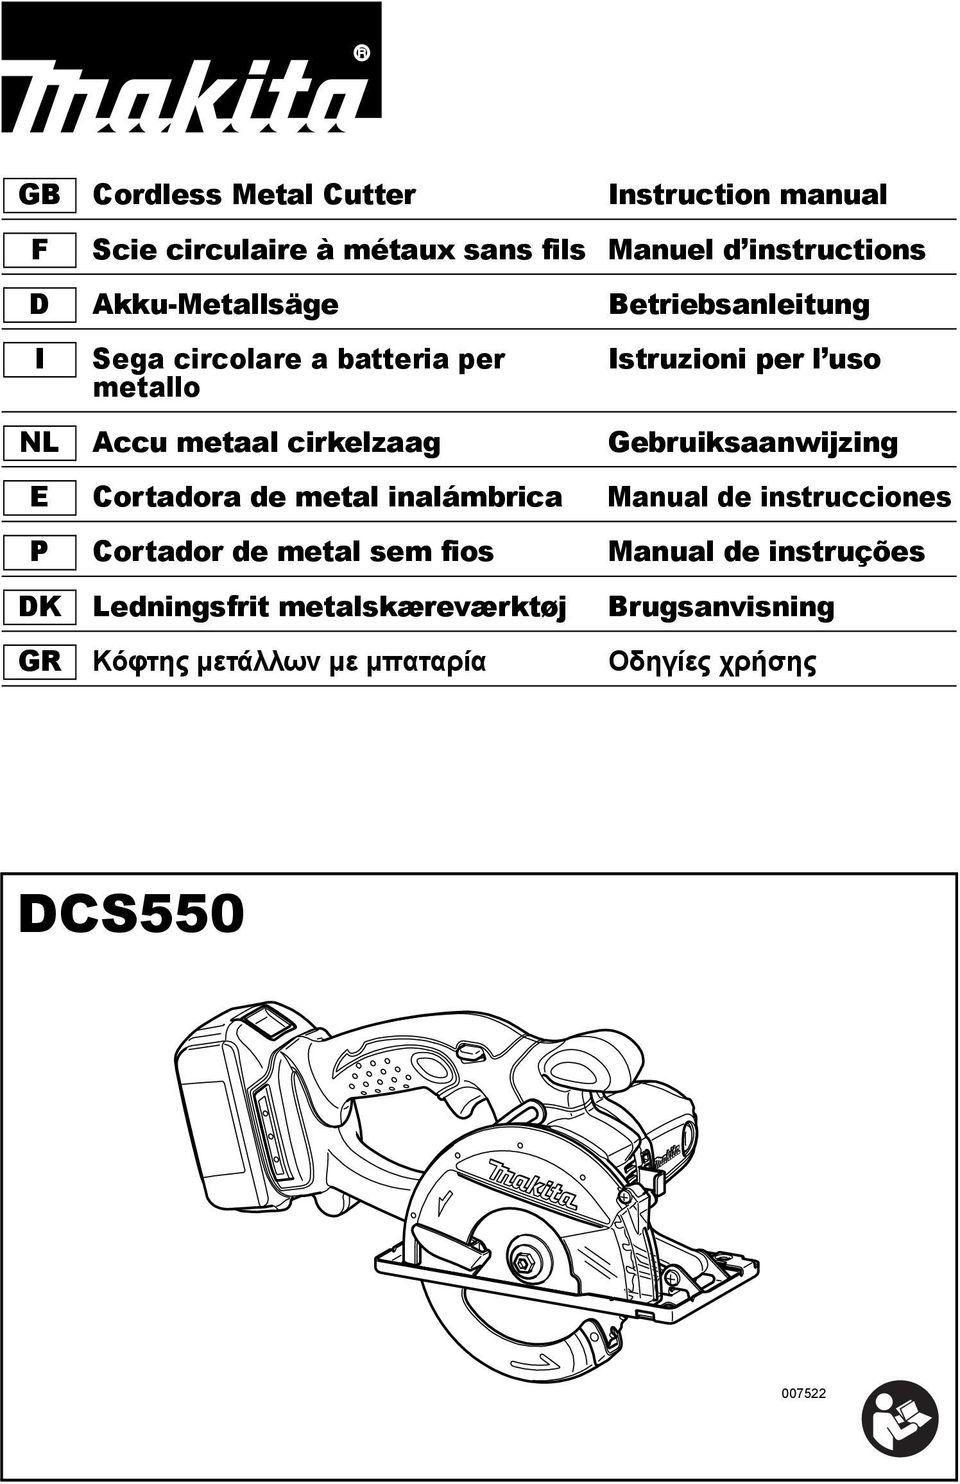 cirkelzaag Gebruiksaanwijzing E Cortadora de metal inalmbrica Manual de instrucciones P Cortador de metal sem